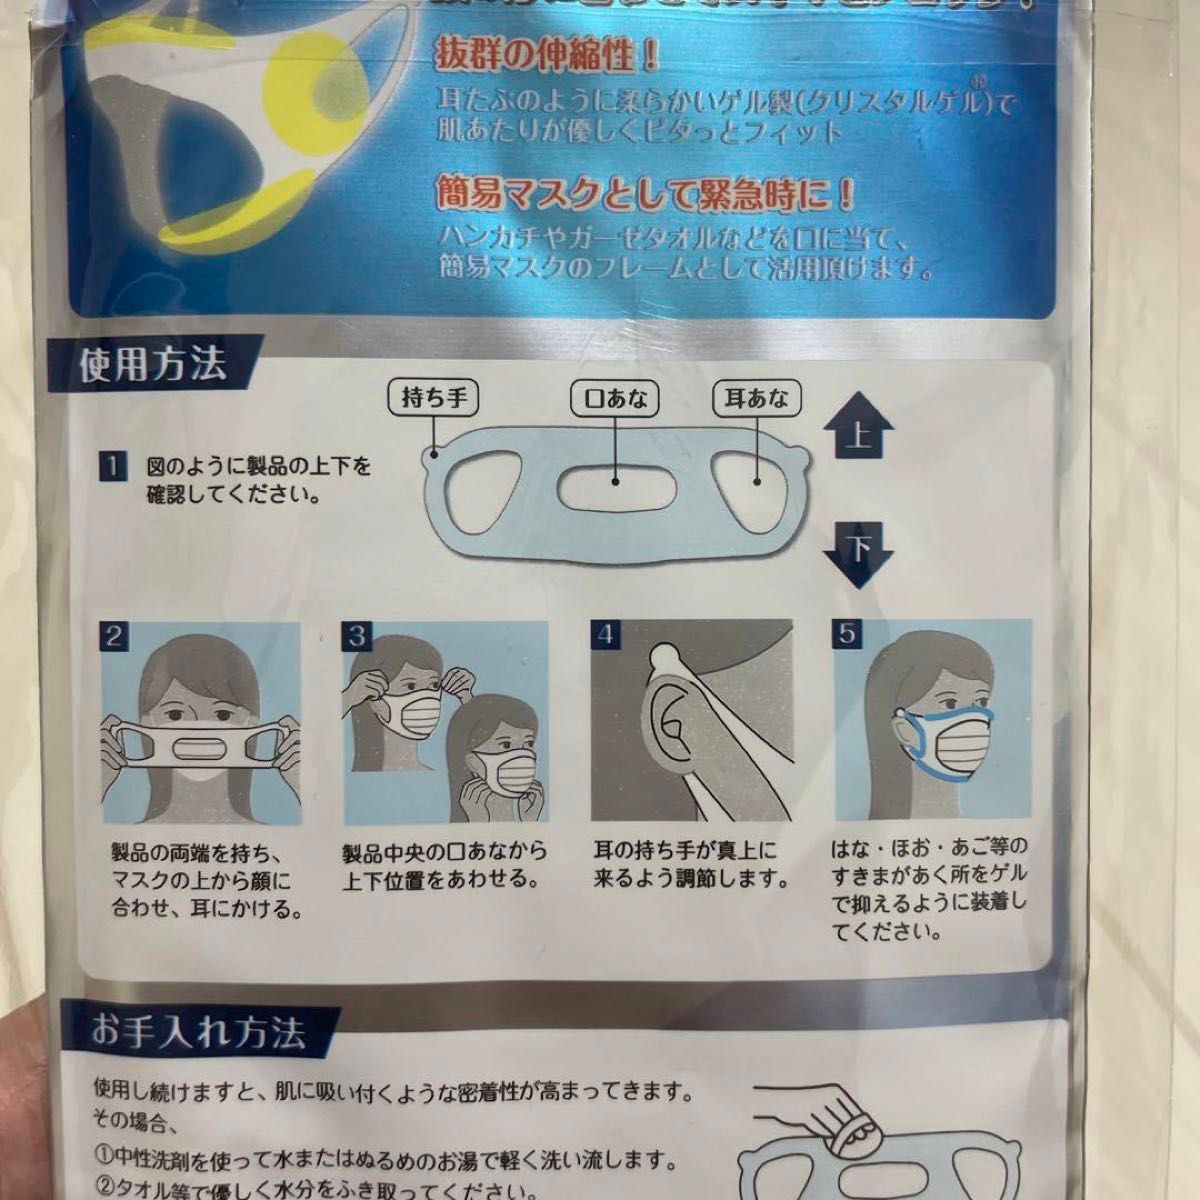 マスピタお手入れセット マスピタやや大きめサイズ入り マスクの隙間を埋める マスクカバー 飛沫 花粉 PM2.5 日本製 繰返使用